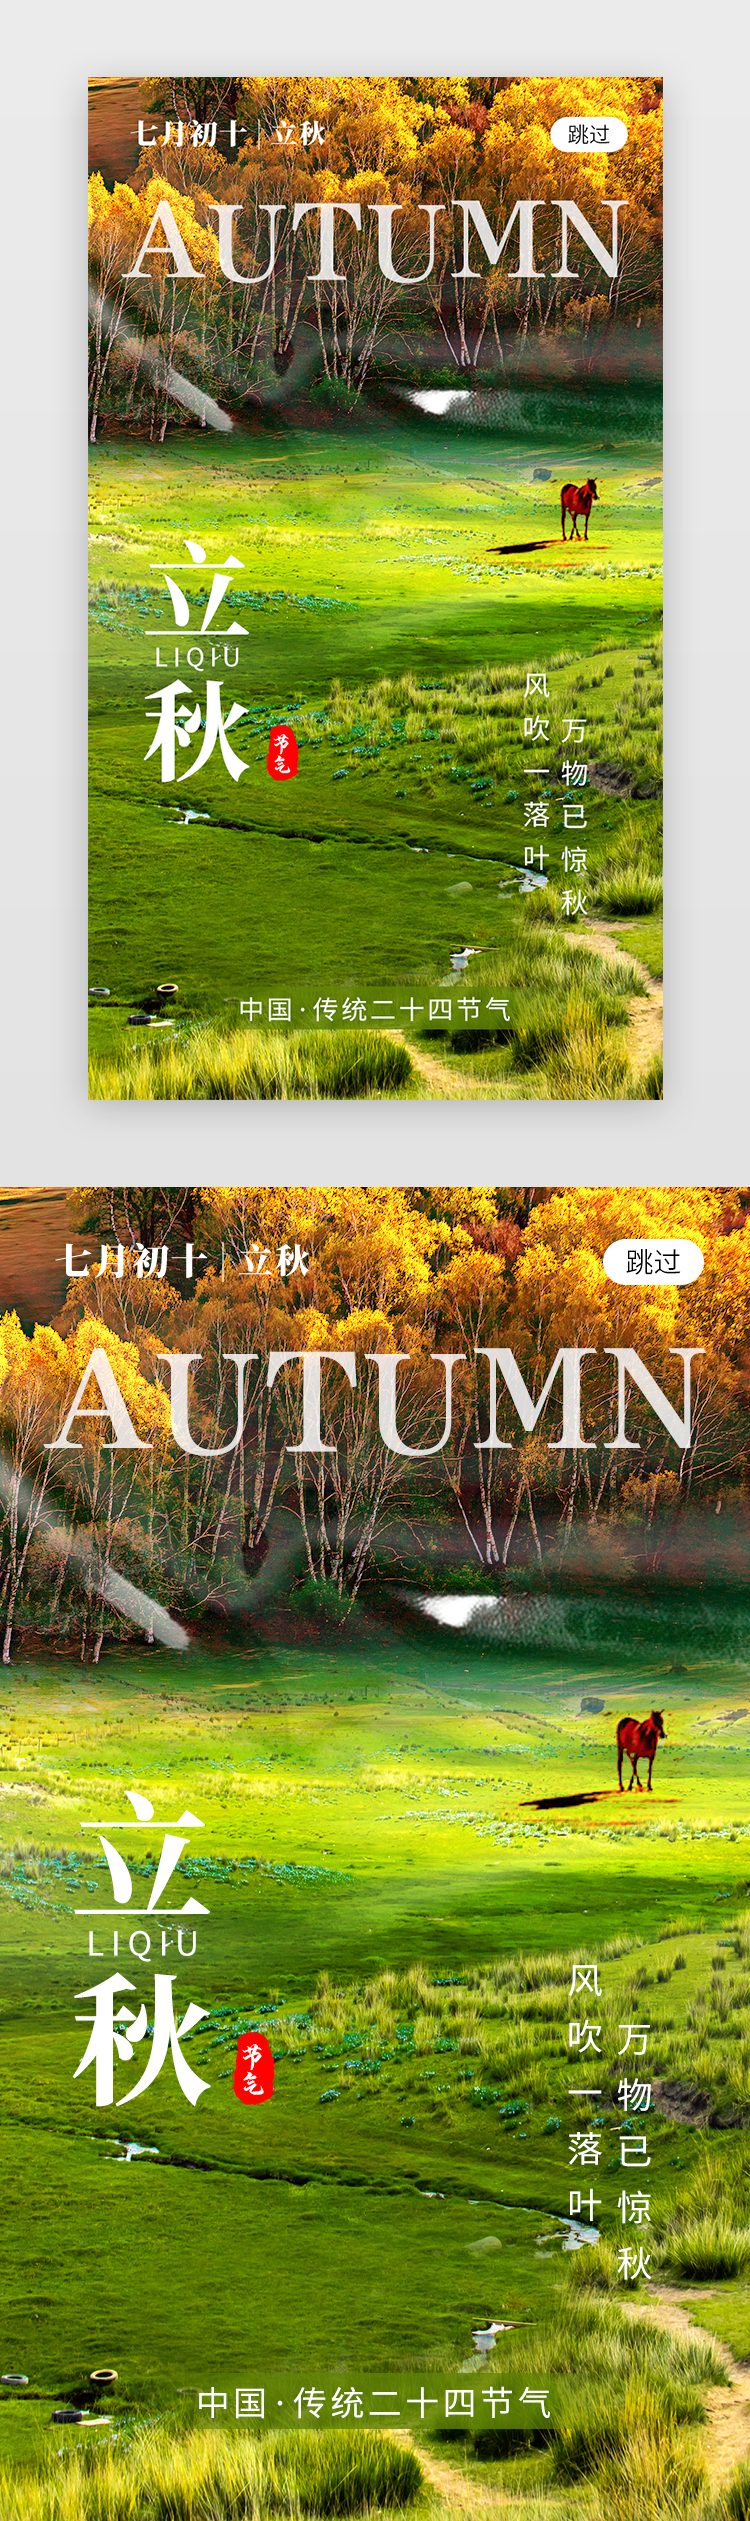 二十四节气立秋 app闪屏创意草绿色草原图片